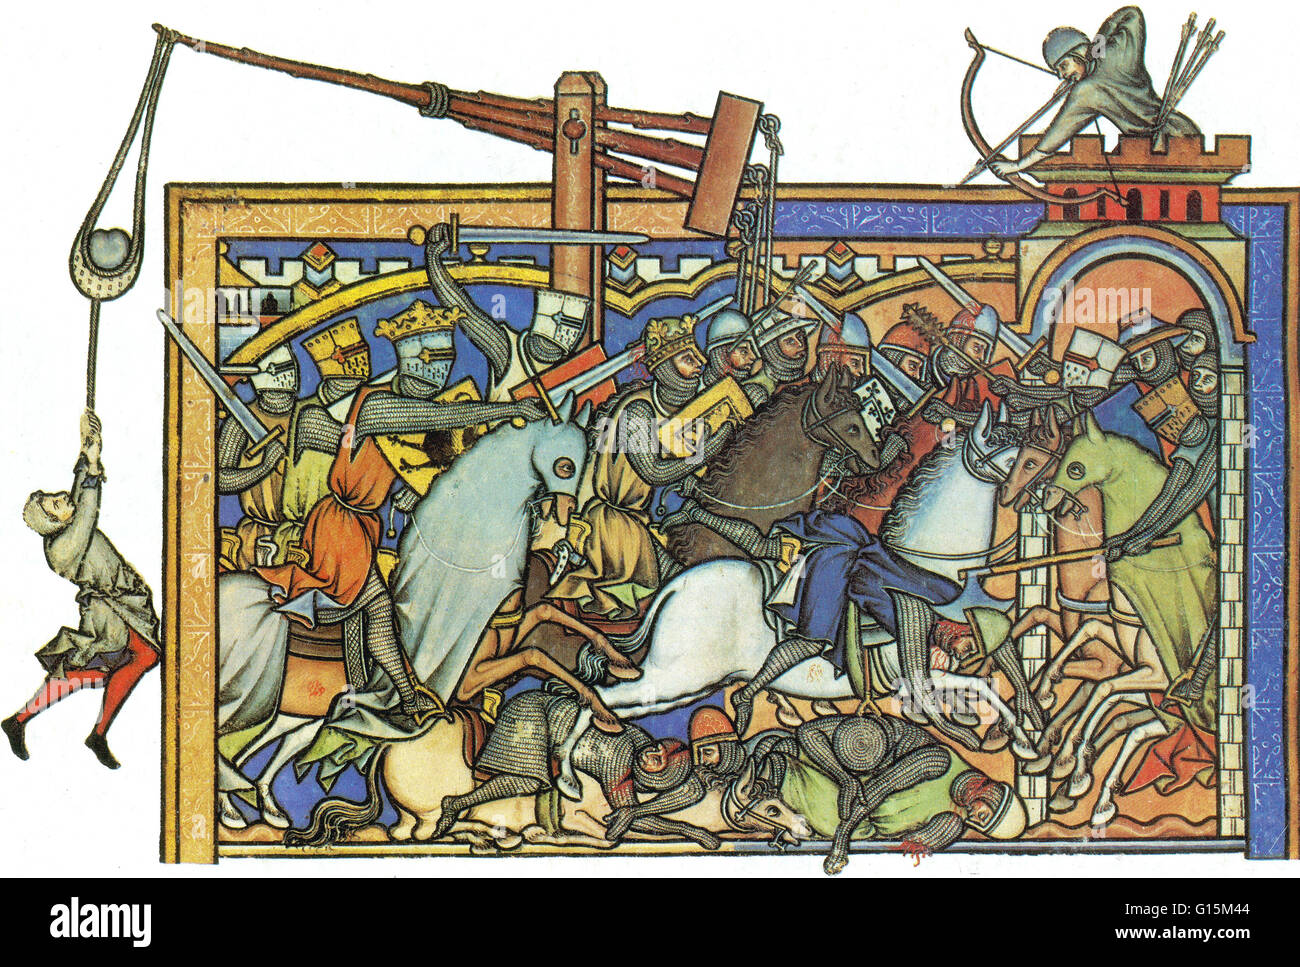 Miniature 13e siècle montre les armes utilisées par les Templiers. Catapult (extrême gauche), Bataille-ax (centre droit), MACE (au-dessus de bataille-ax) longbow (en haut à droite) et de nombreux chevaliers sont vus brandissant le glaive. L'image apparaît dans la Crusad Banque D'Images